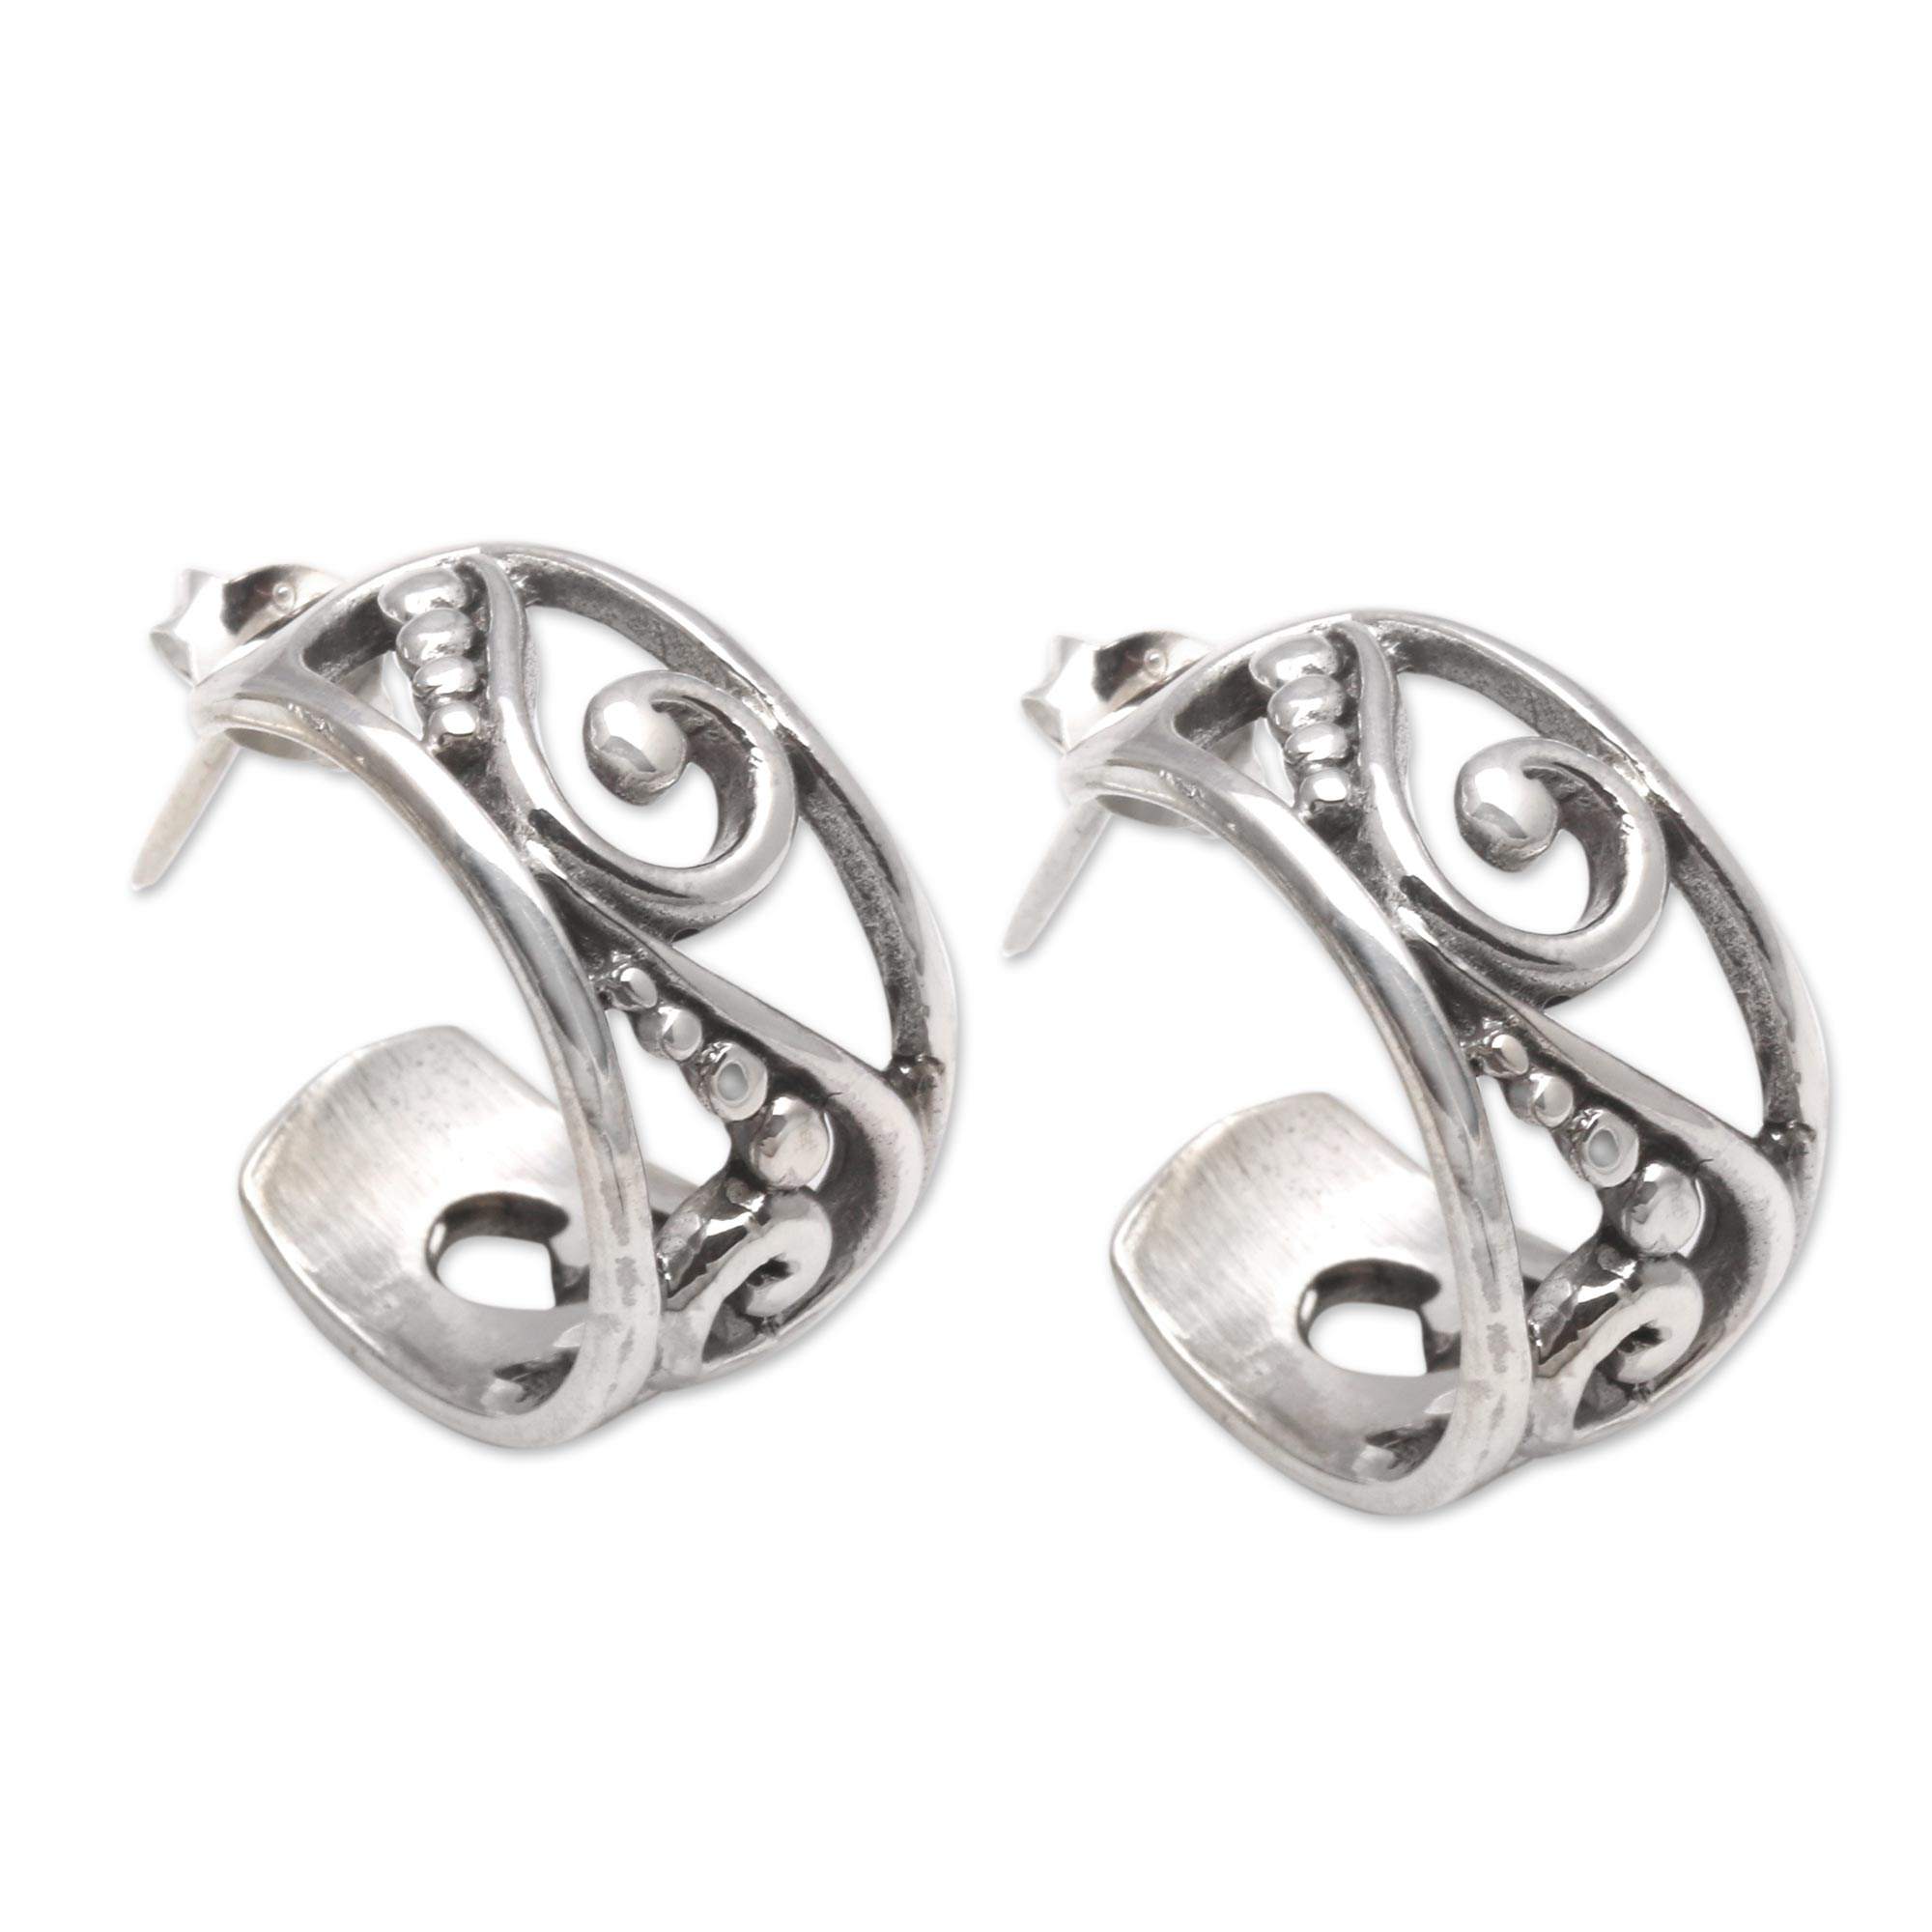 Swirl Pattern Sterling Silver Half-Hoop Earrings from Bali - Feminine ...